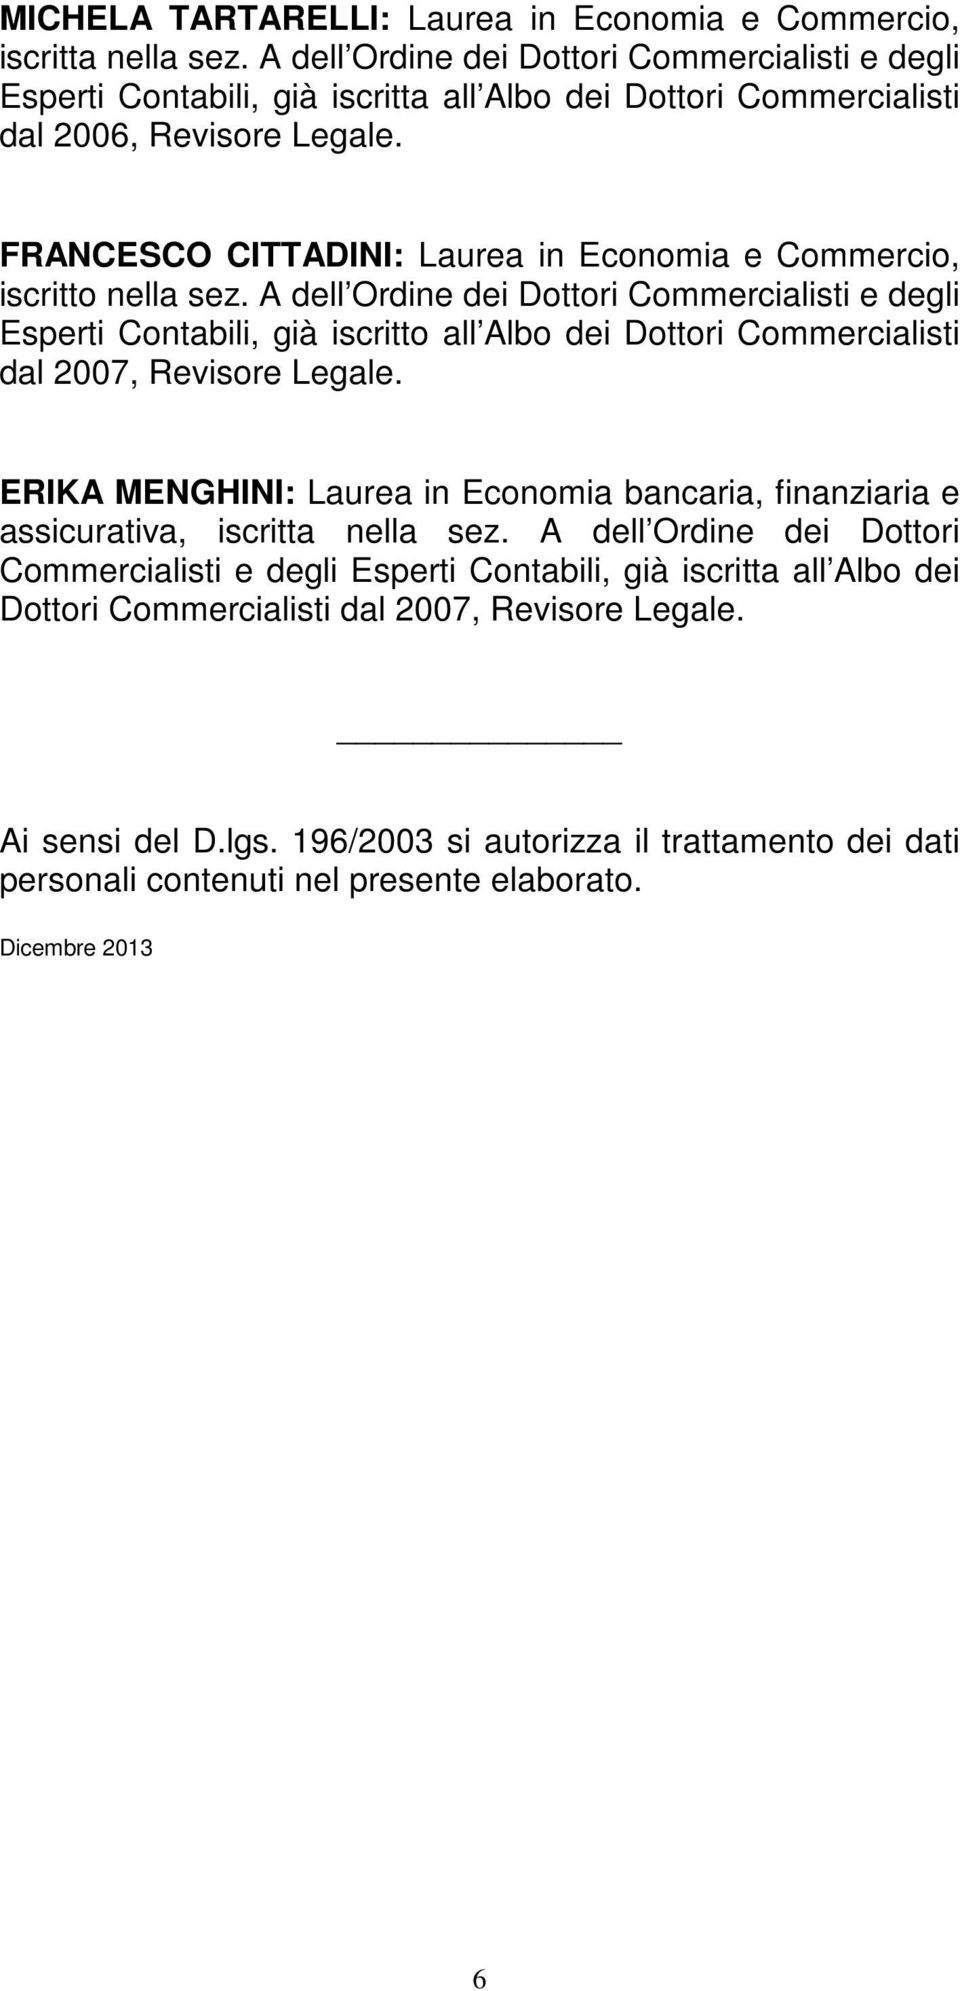 FRANCESCO CITTADINI: Laurea in Economia e Commercio, dal 2007, Revisore Legale.